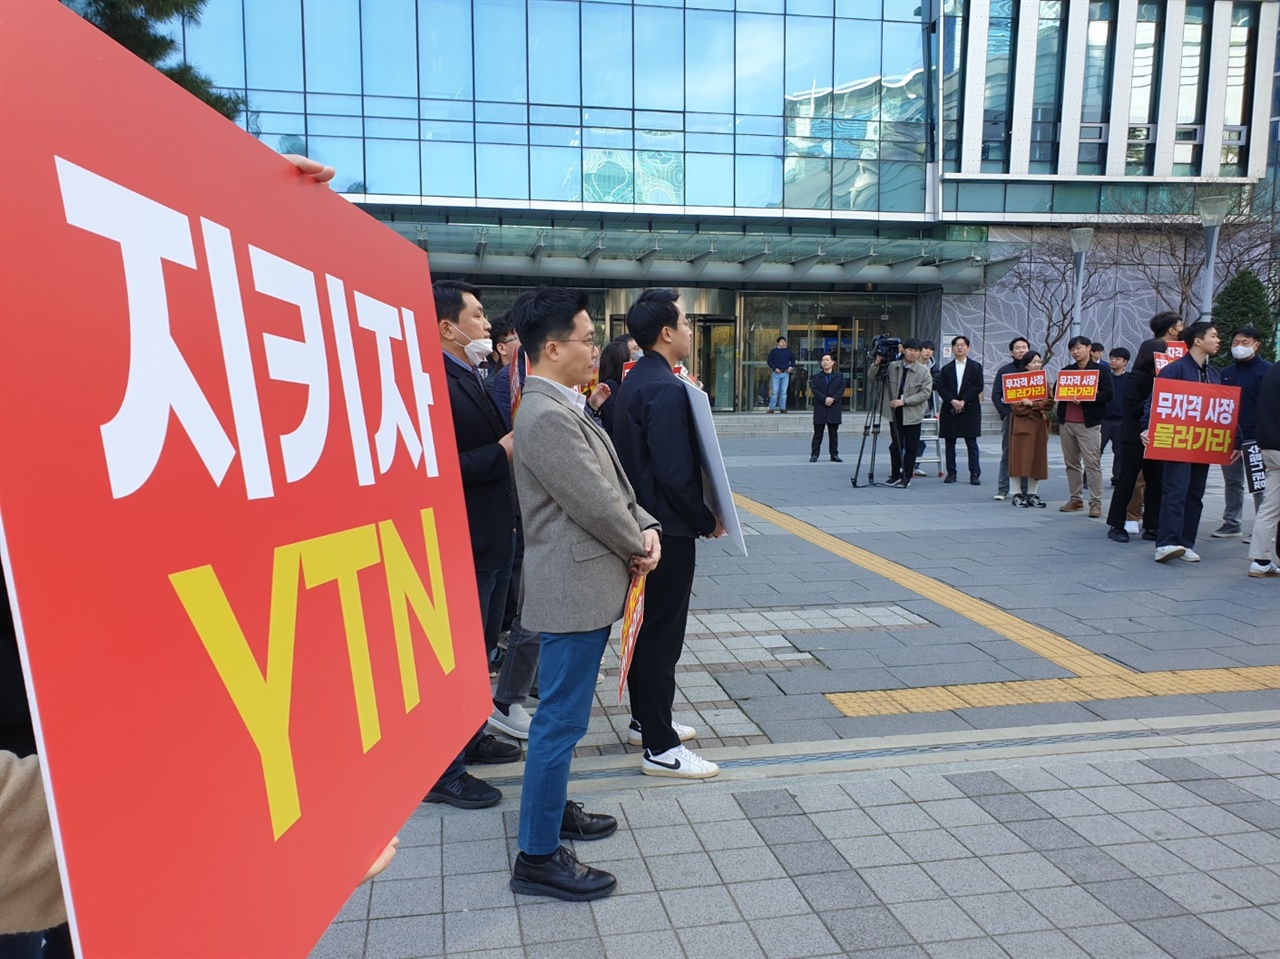 전국언론노조 YTN 조합원들이 김백 신임 사장 출근길 앞에서 피켓시위를 벌이고 있다.